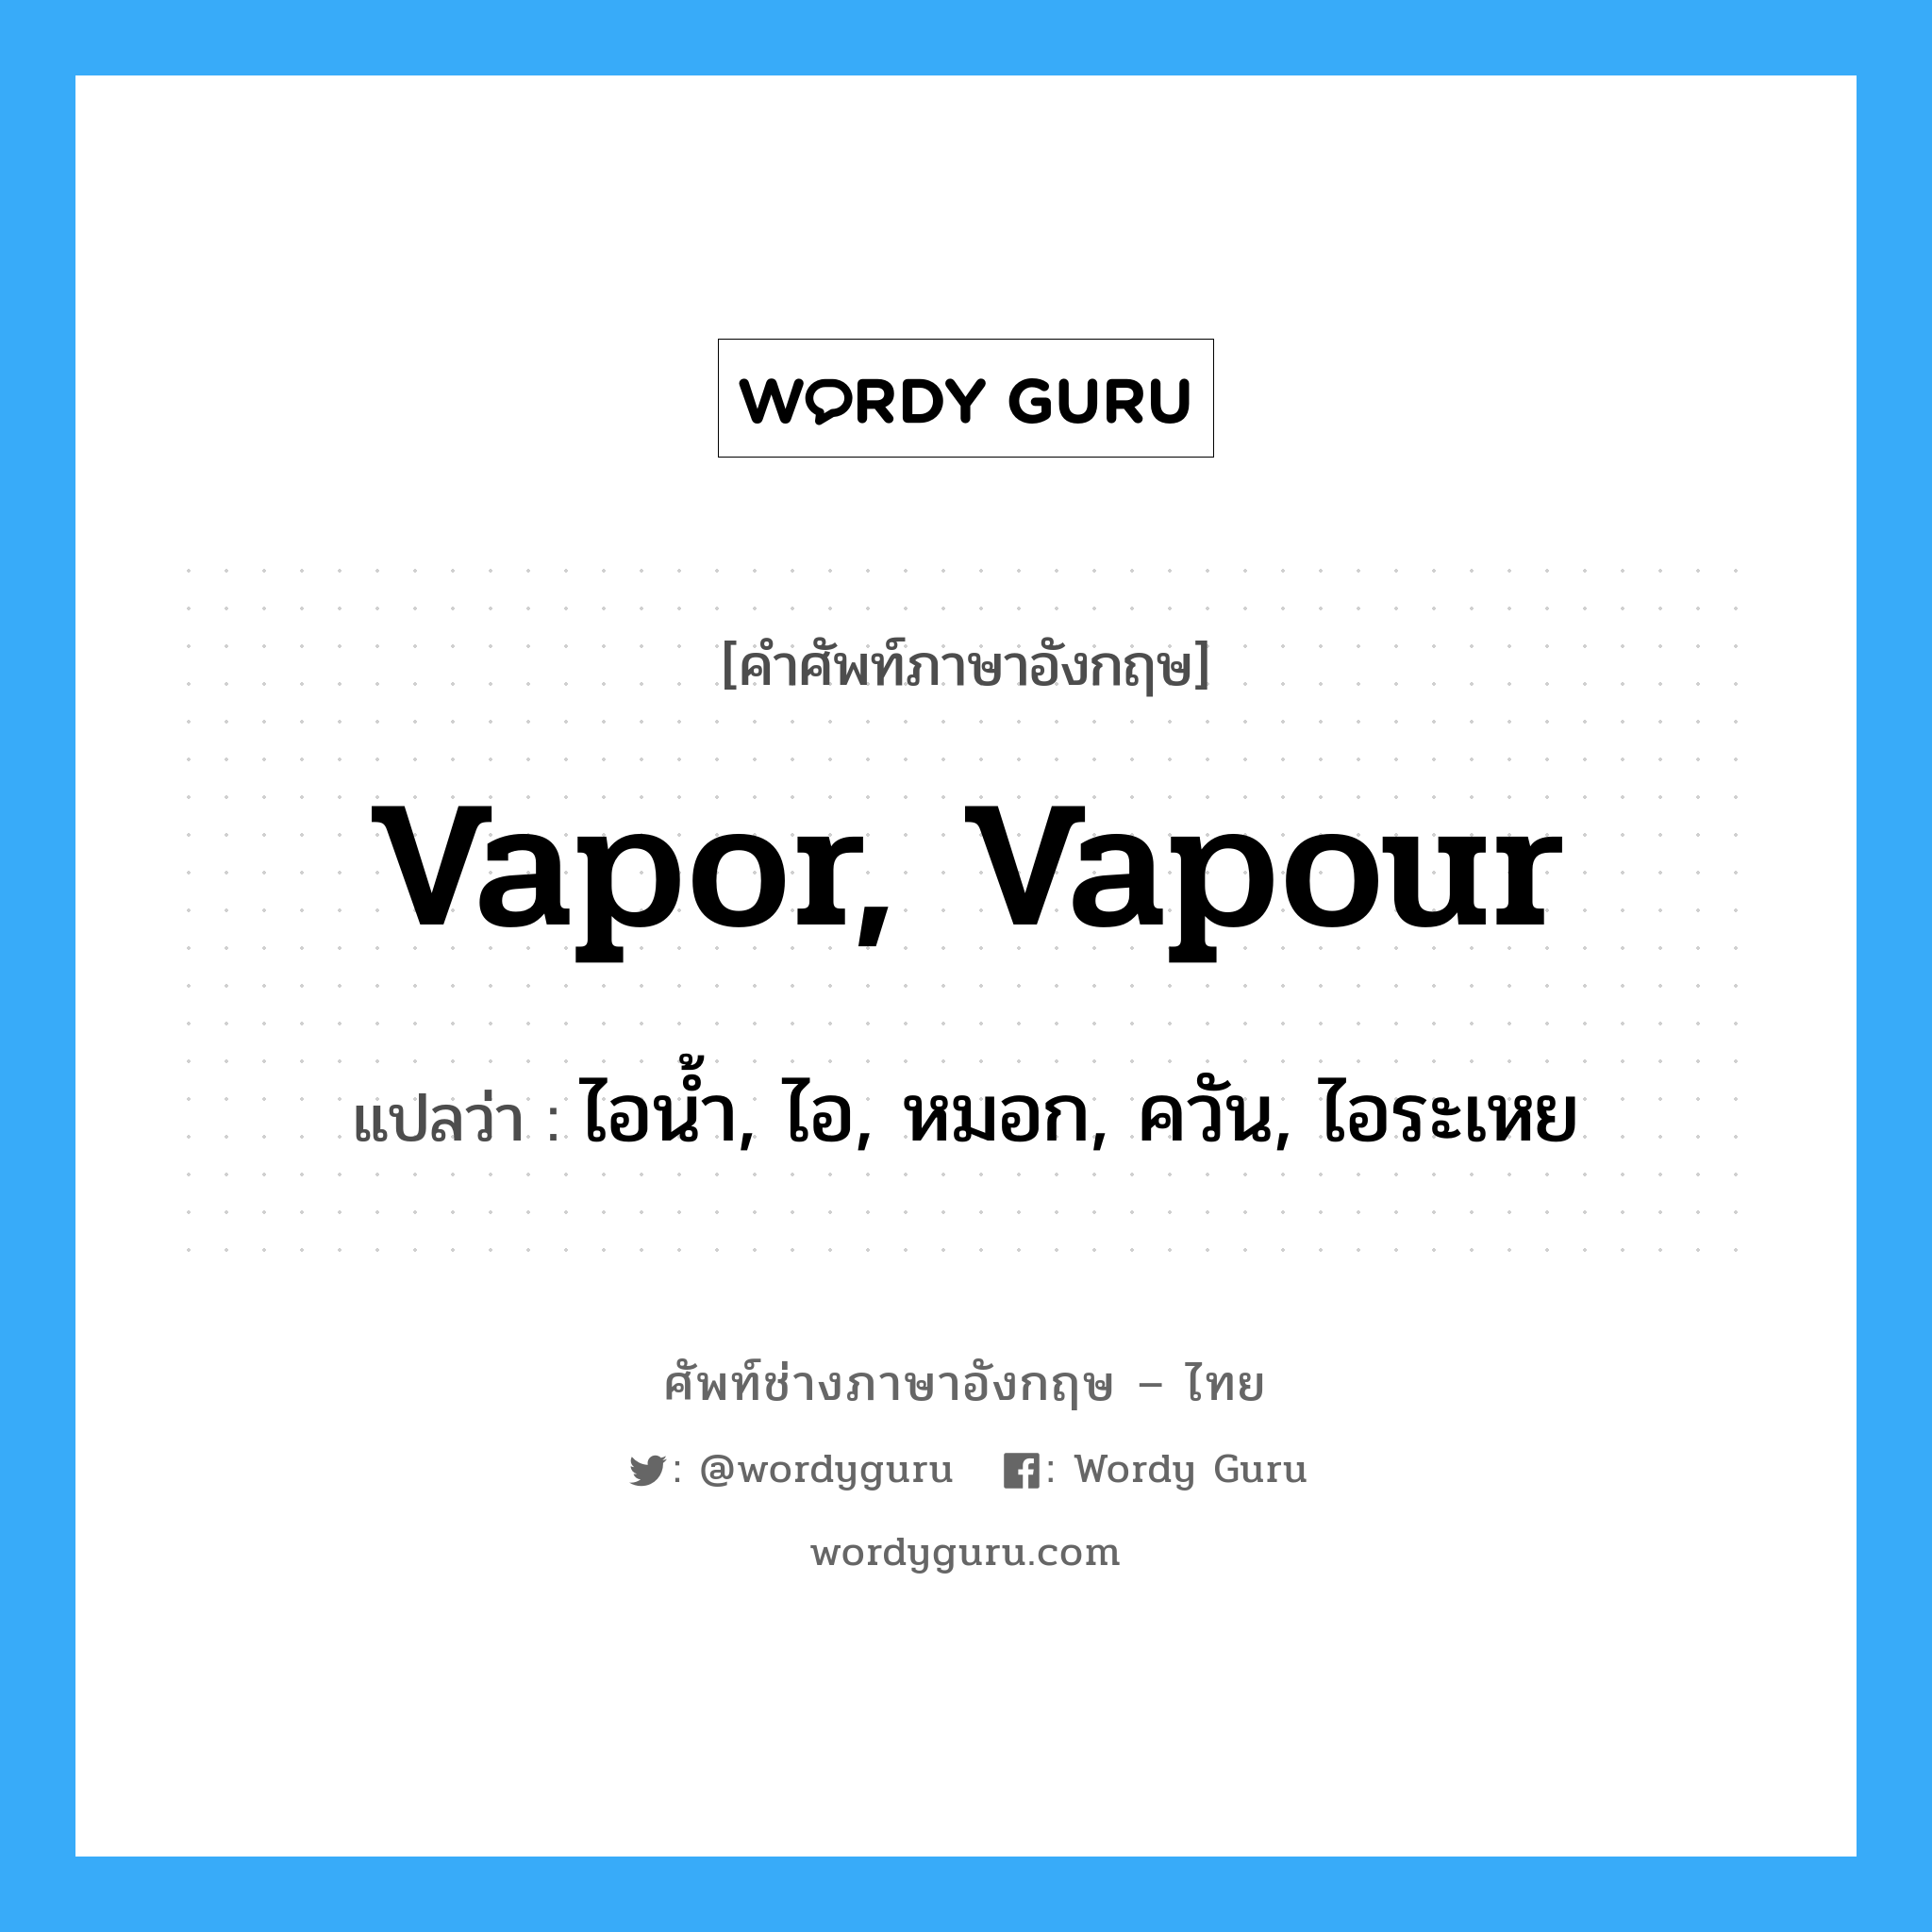 vapor, vapour แปลว่า?, คำศัพท์ช่างภาษาอังกฤษ - ไทย vapor, vapour คำศัพท์ภาษาอังกฤษ vapor, vapour แปลว่า ไอน้ำ, ไอ, หมอก, ควัน, ไอระเหย